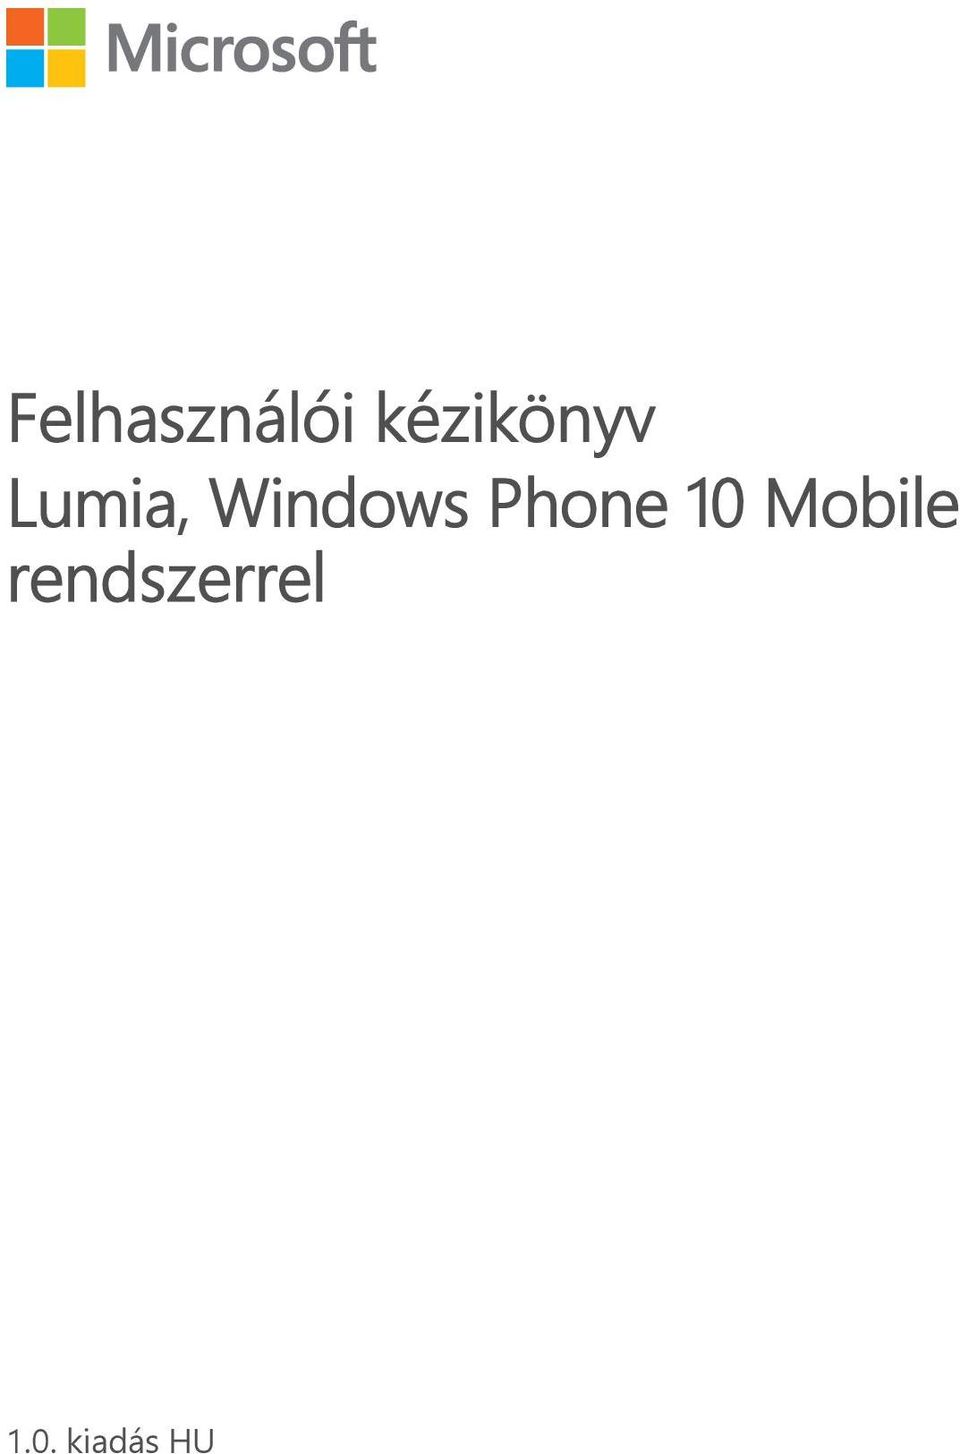 Felhasználói kézikönyv Lumia, Windows Phone 10 Mobile rendszerrel - PDF  Free Download